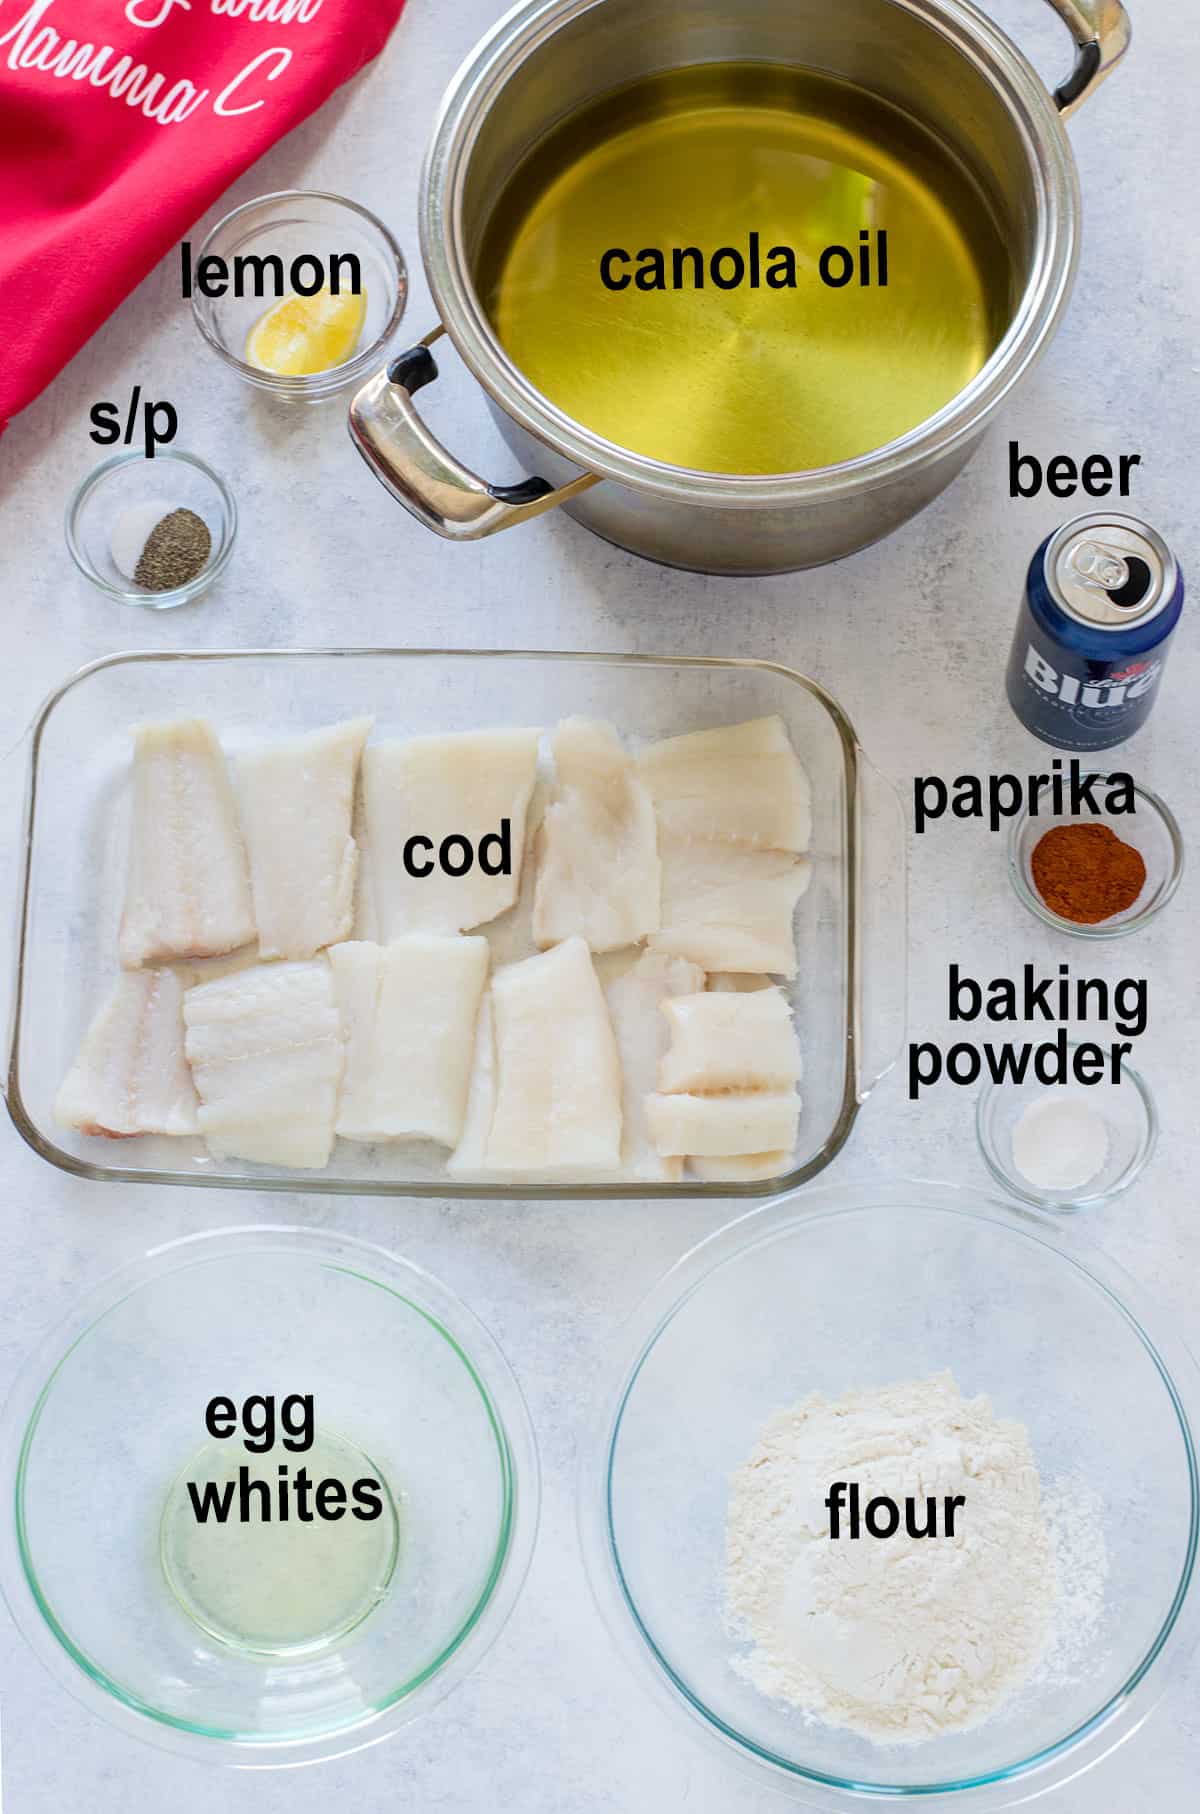 raw cod, flour, beer, egg whites, seasonings, oil, lemon